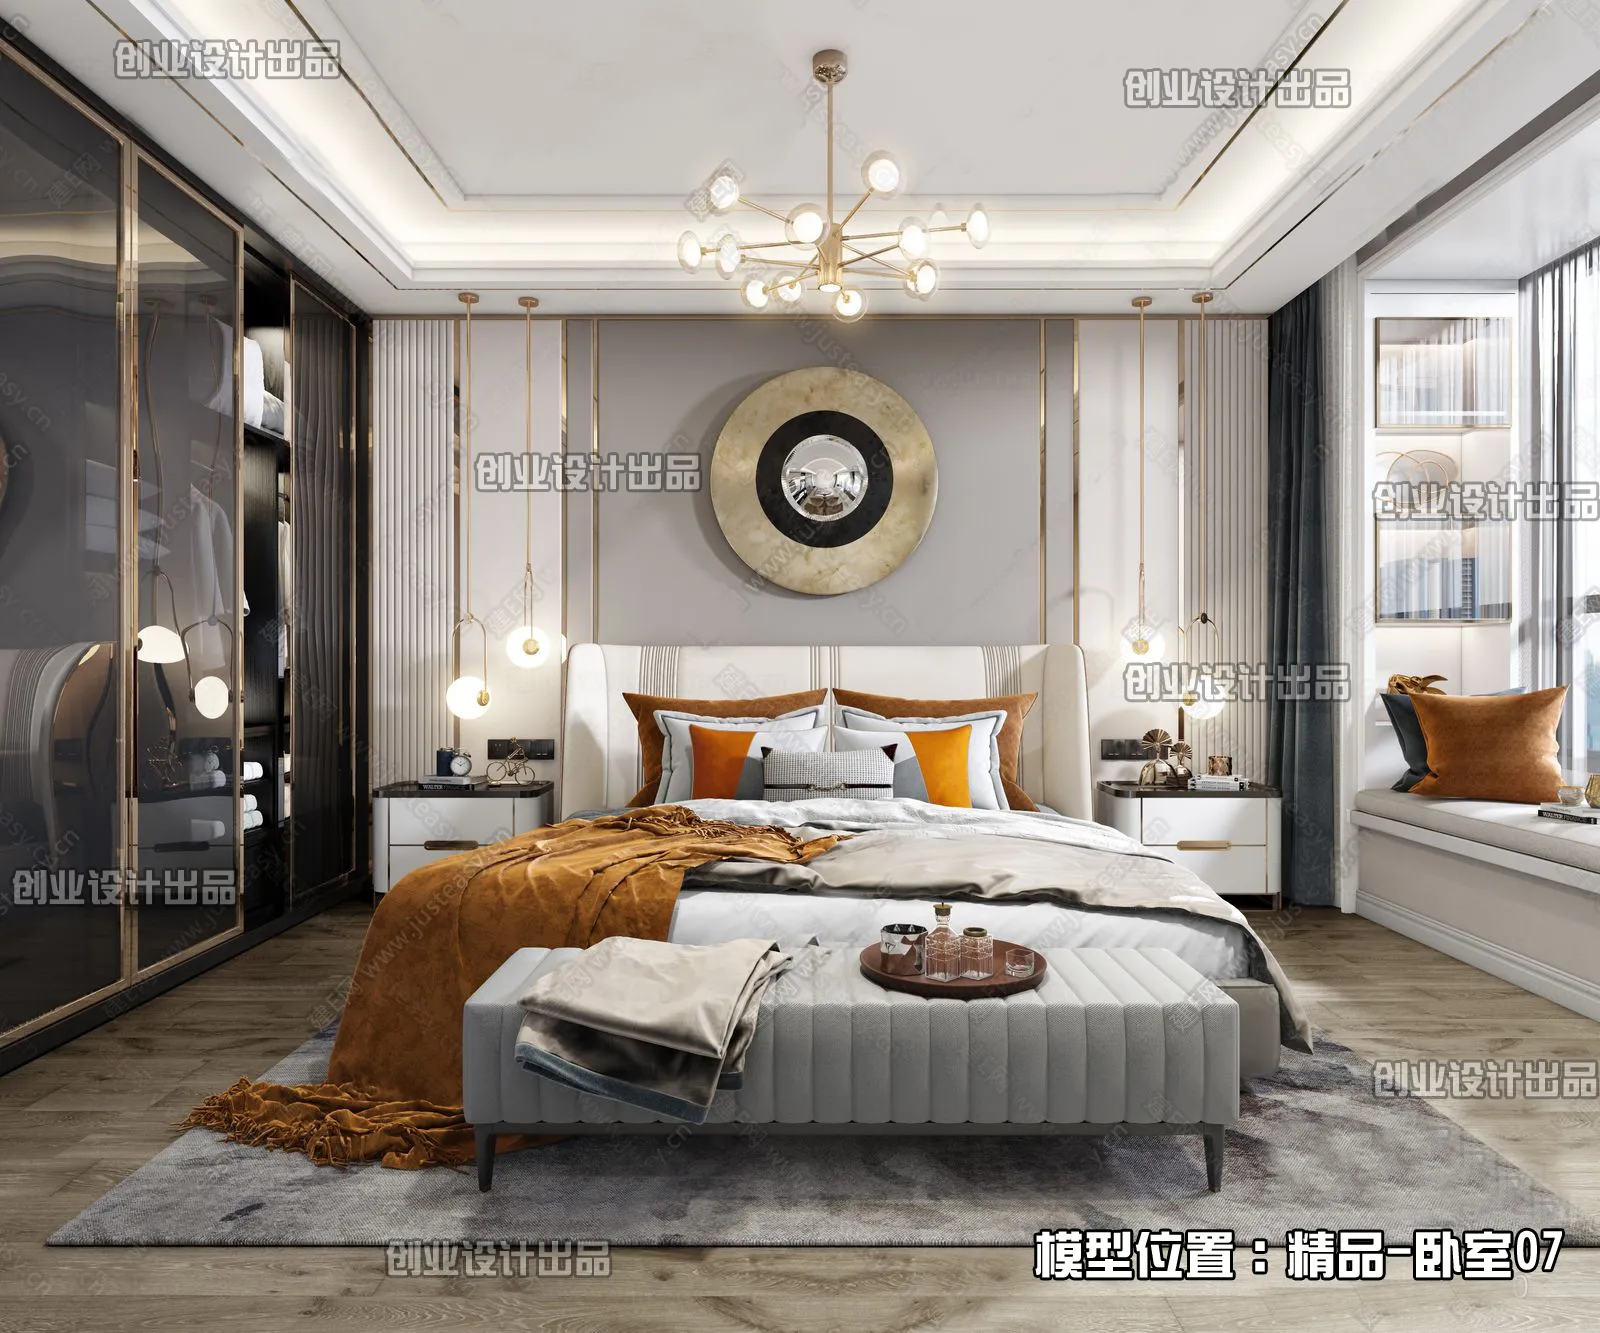 Bedroom – Modern Interior Design – 3D Models – 153